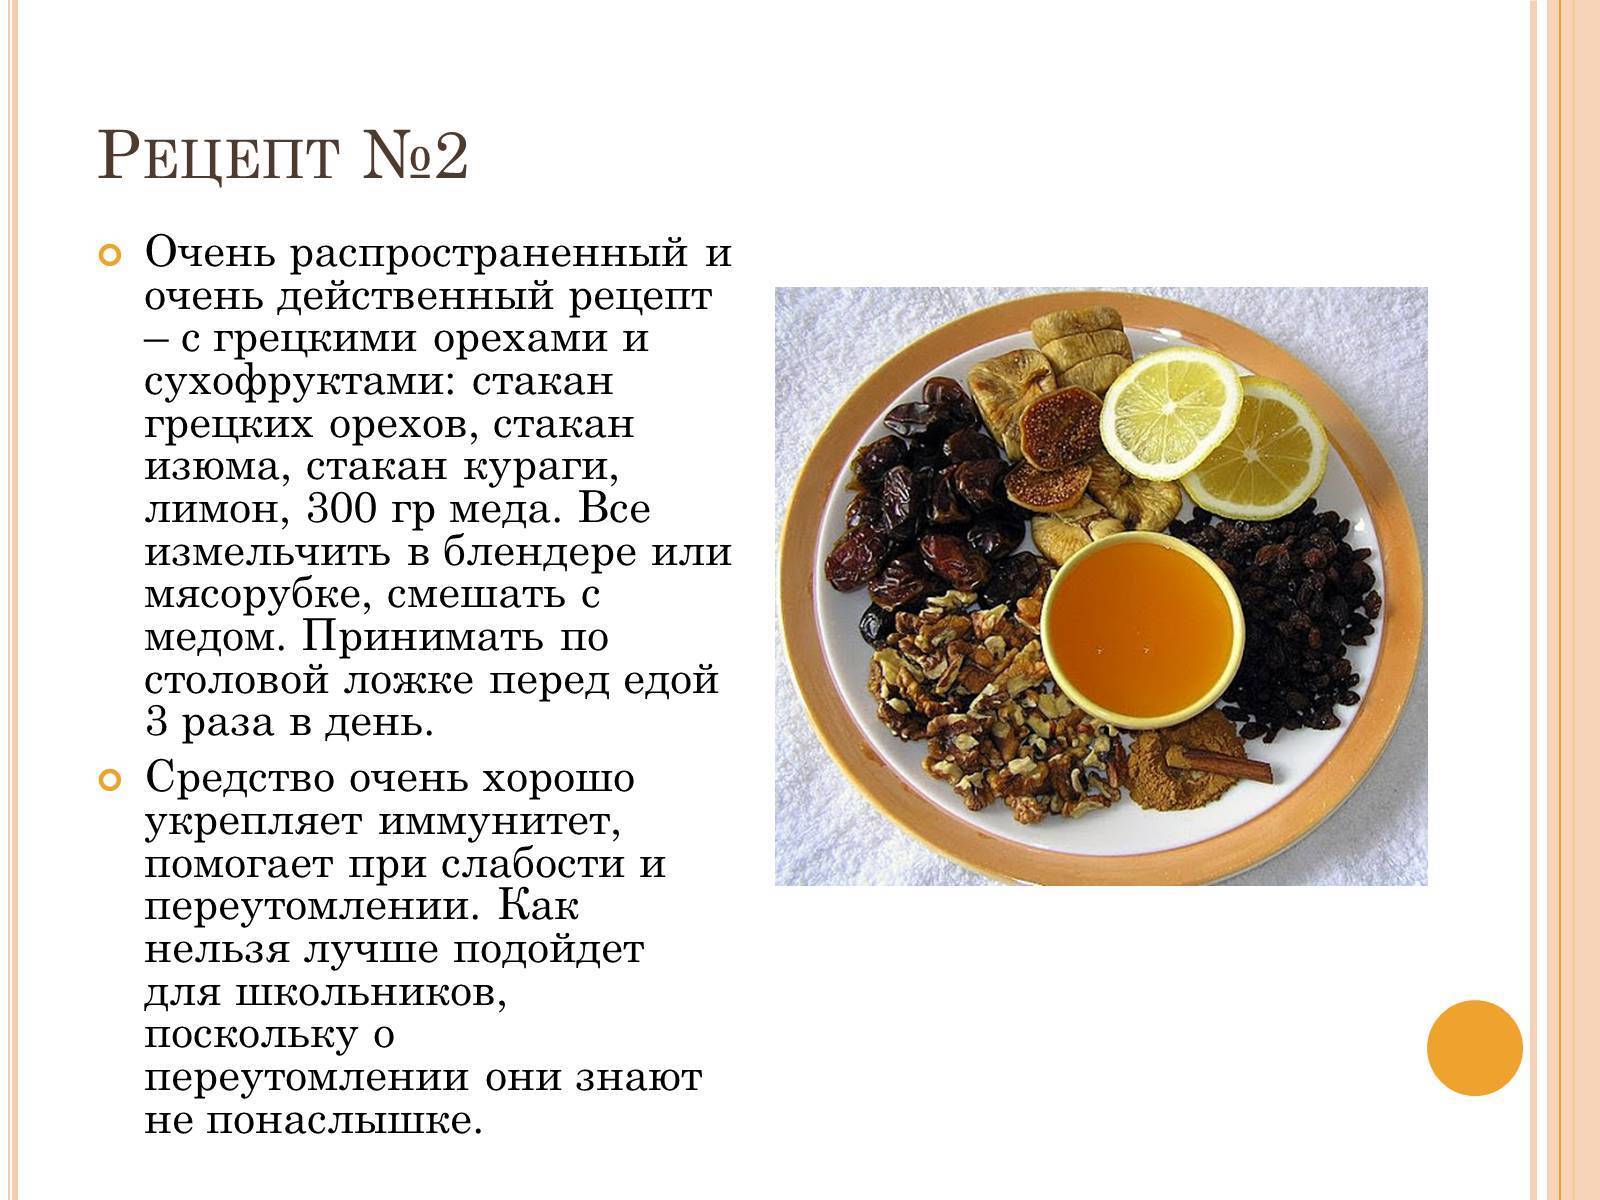 Смесь (курага, чернослив, грецкий орех, мед, лимон) для иммунитета: рецепт